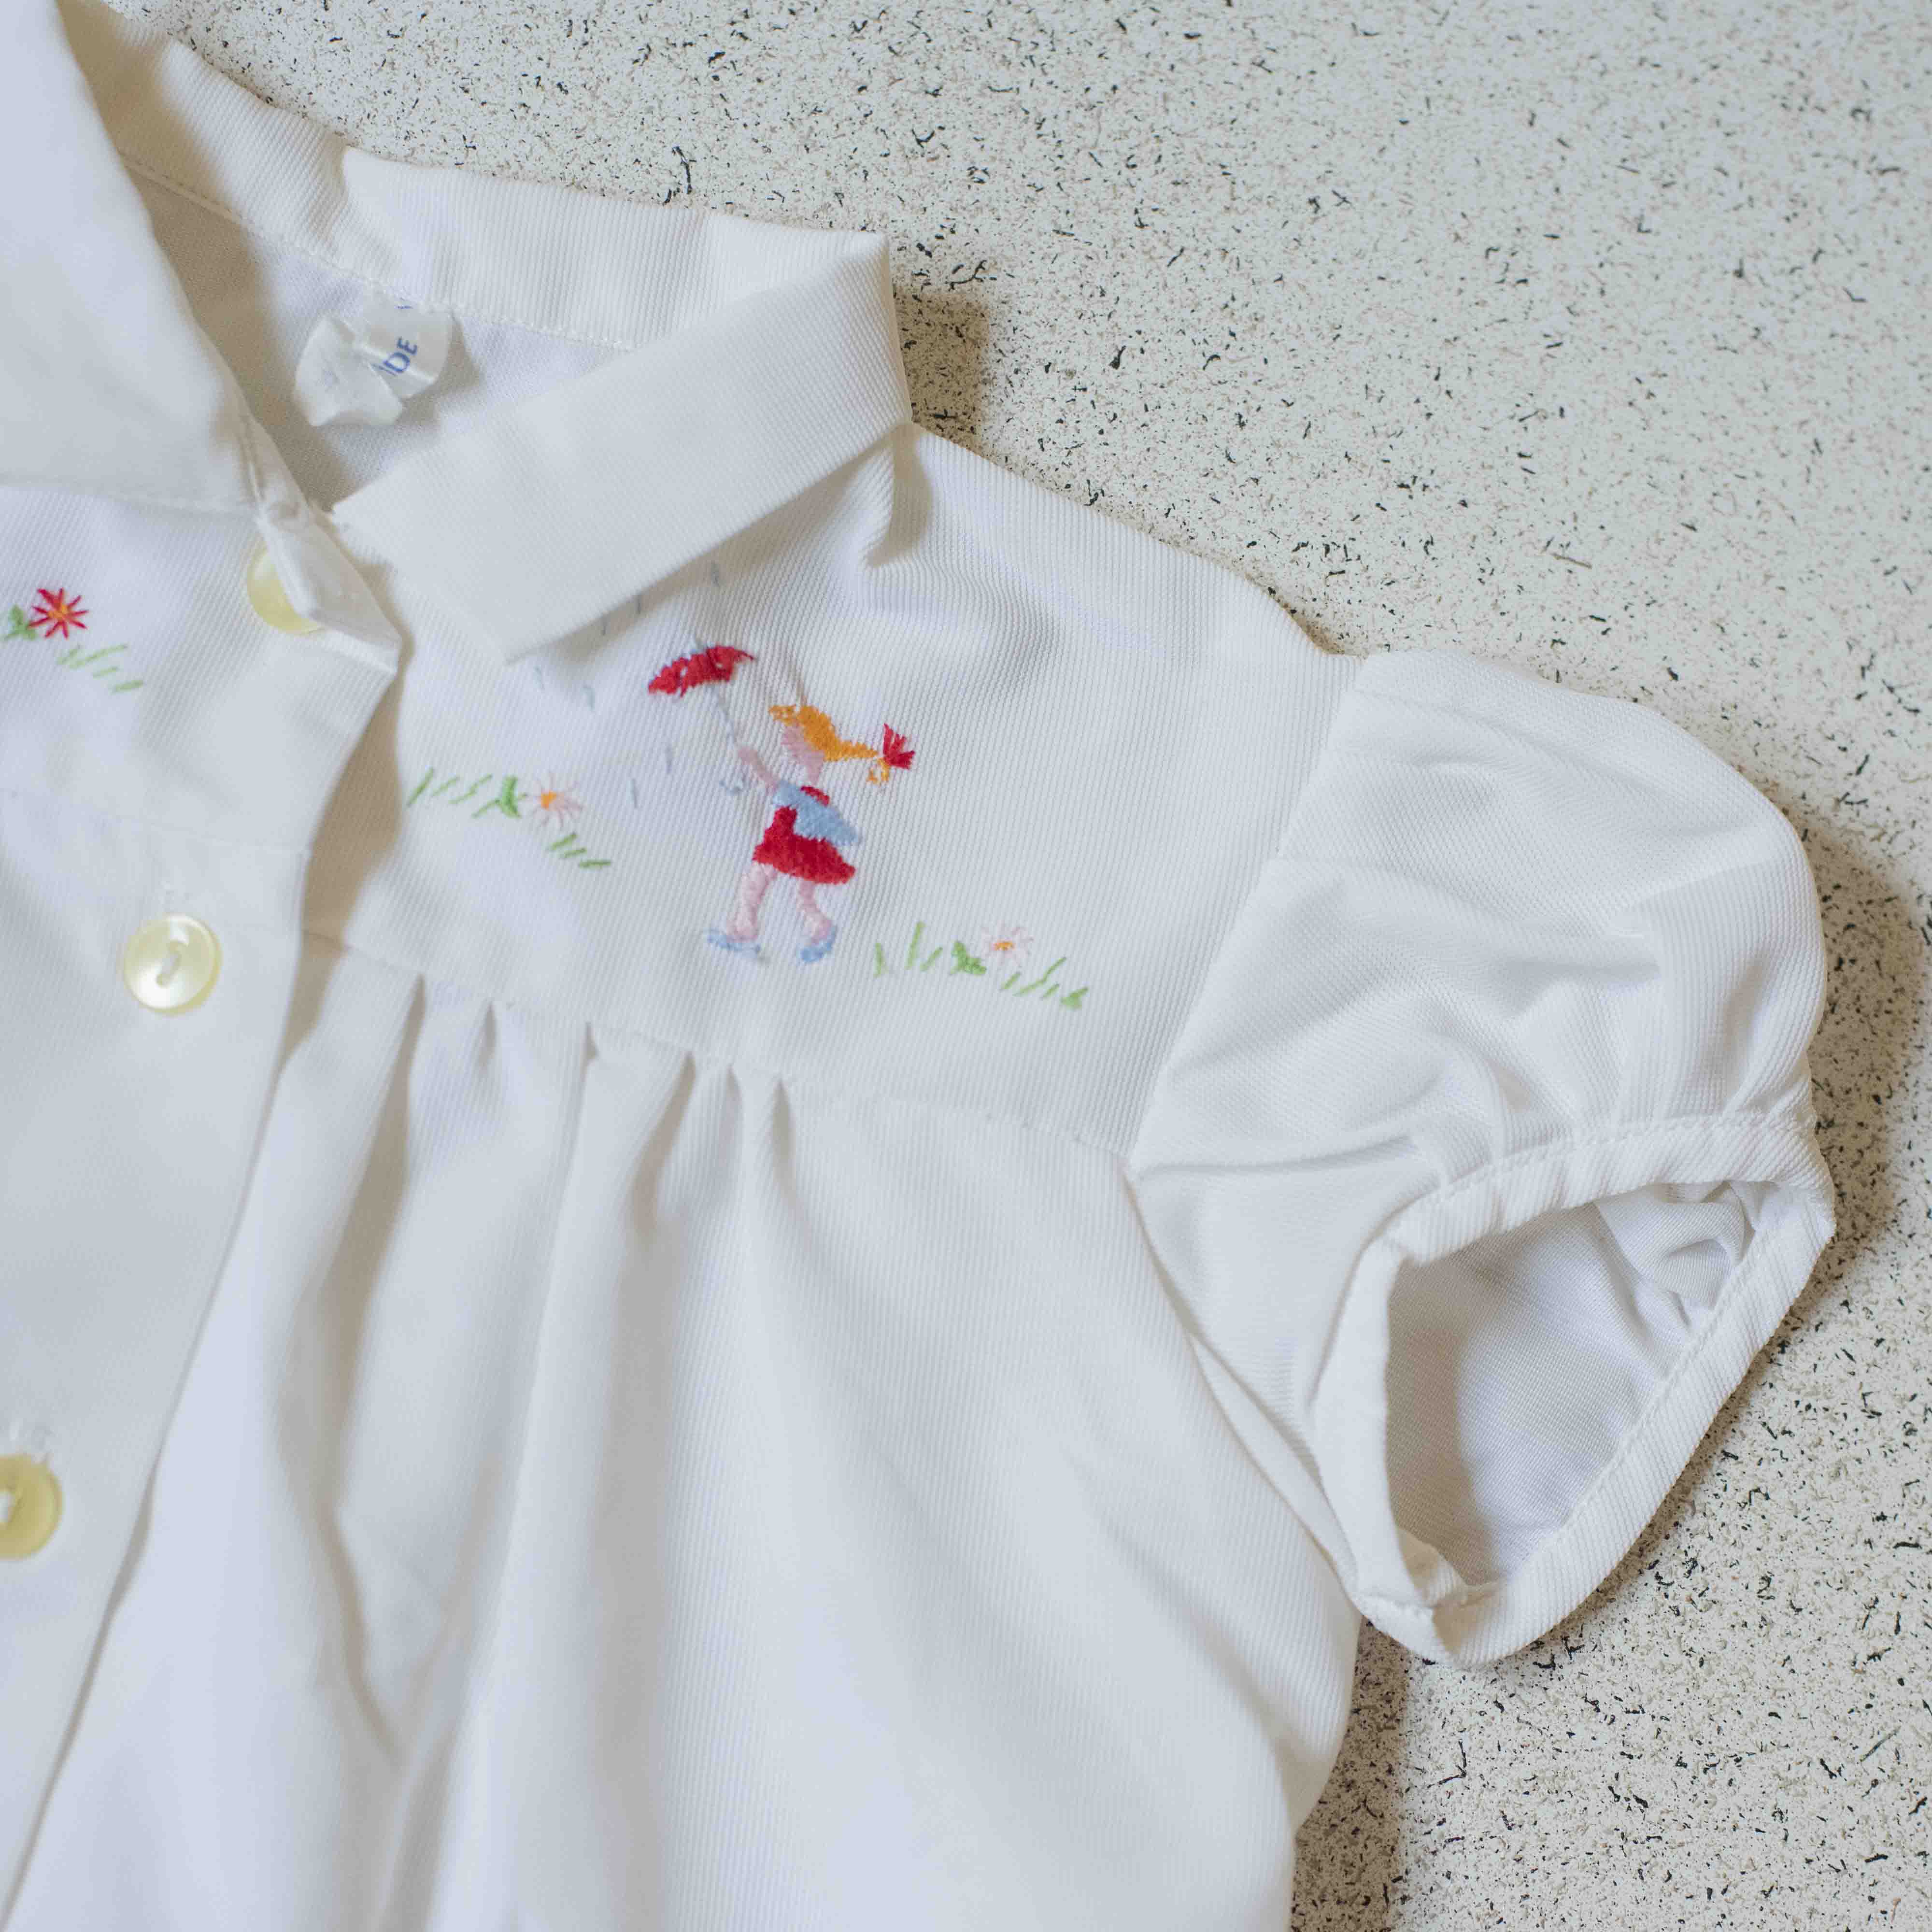 חולצת ניילון לבנה עם ילדה מטיילת עם מטריה | 18-24 חודשים